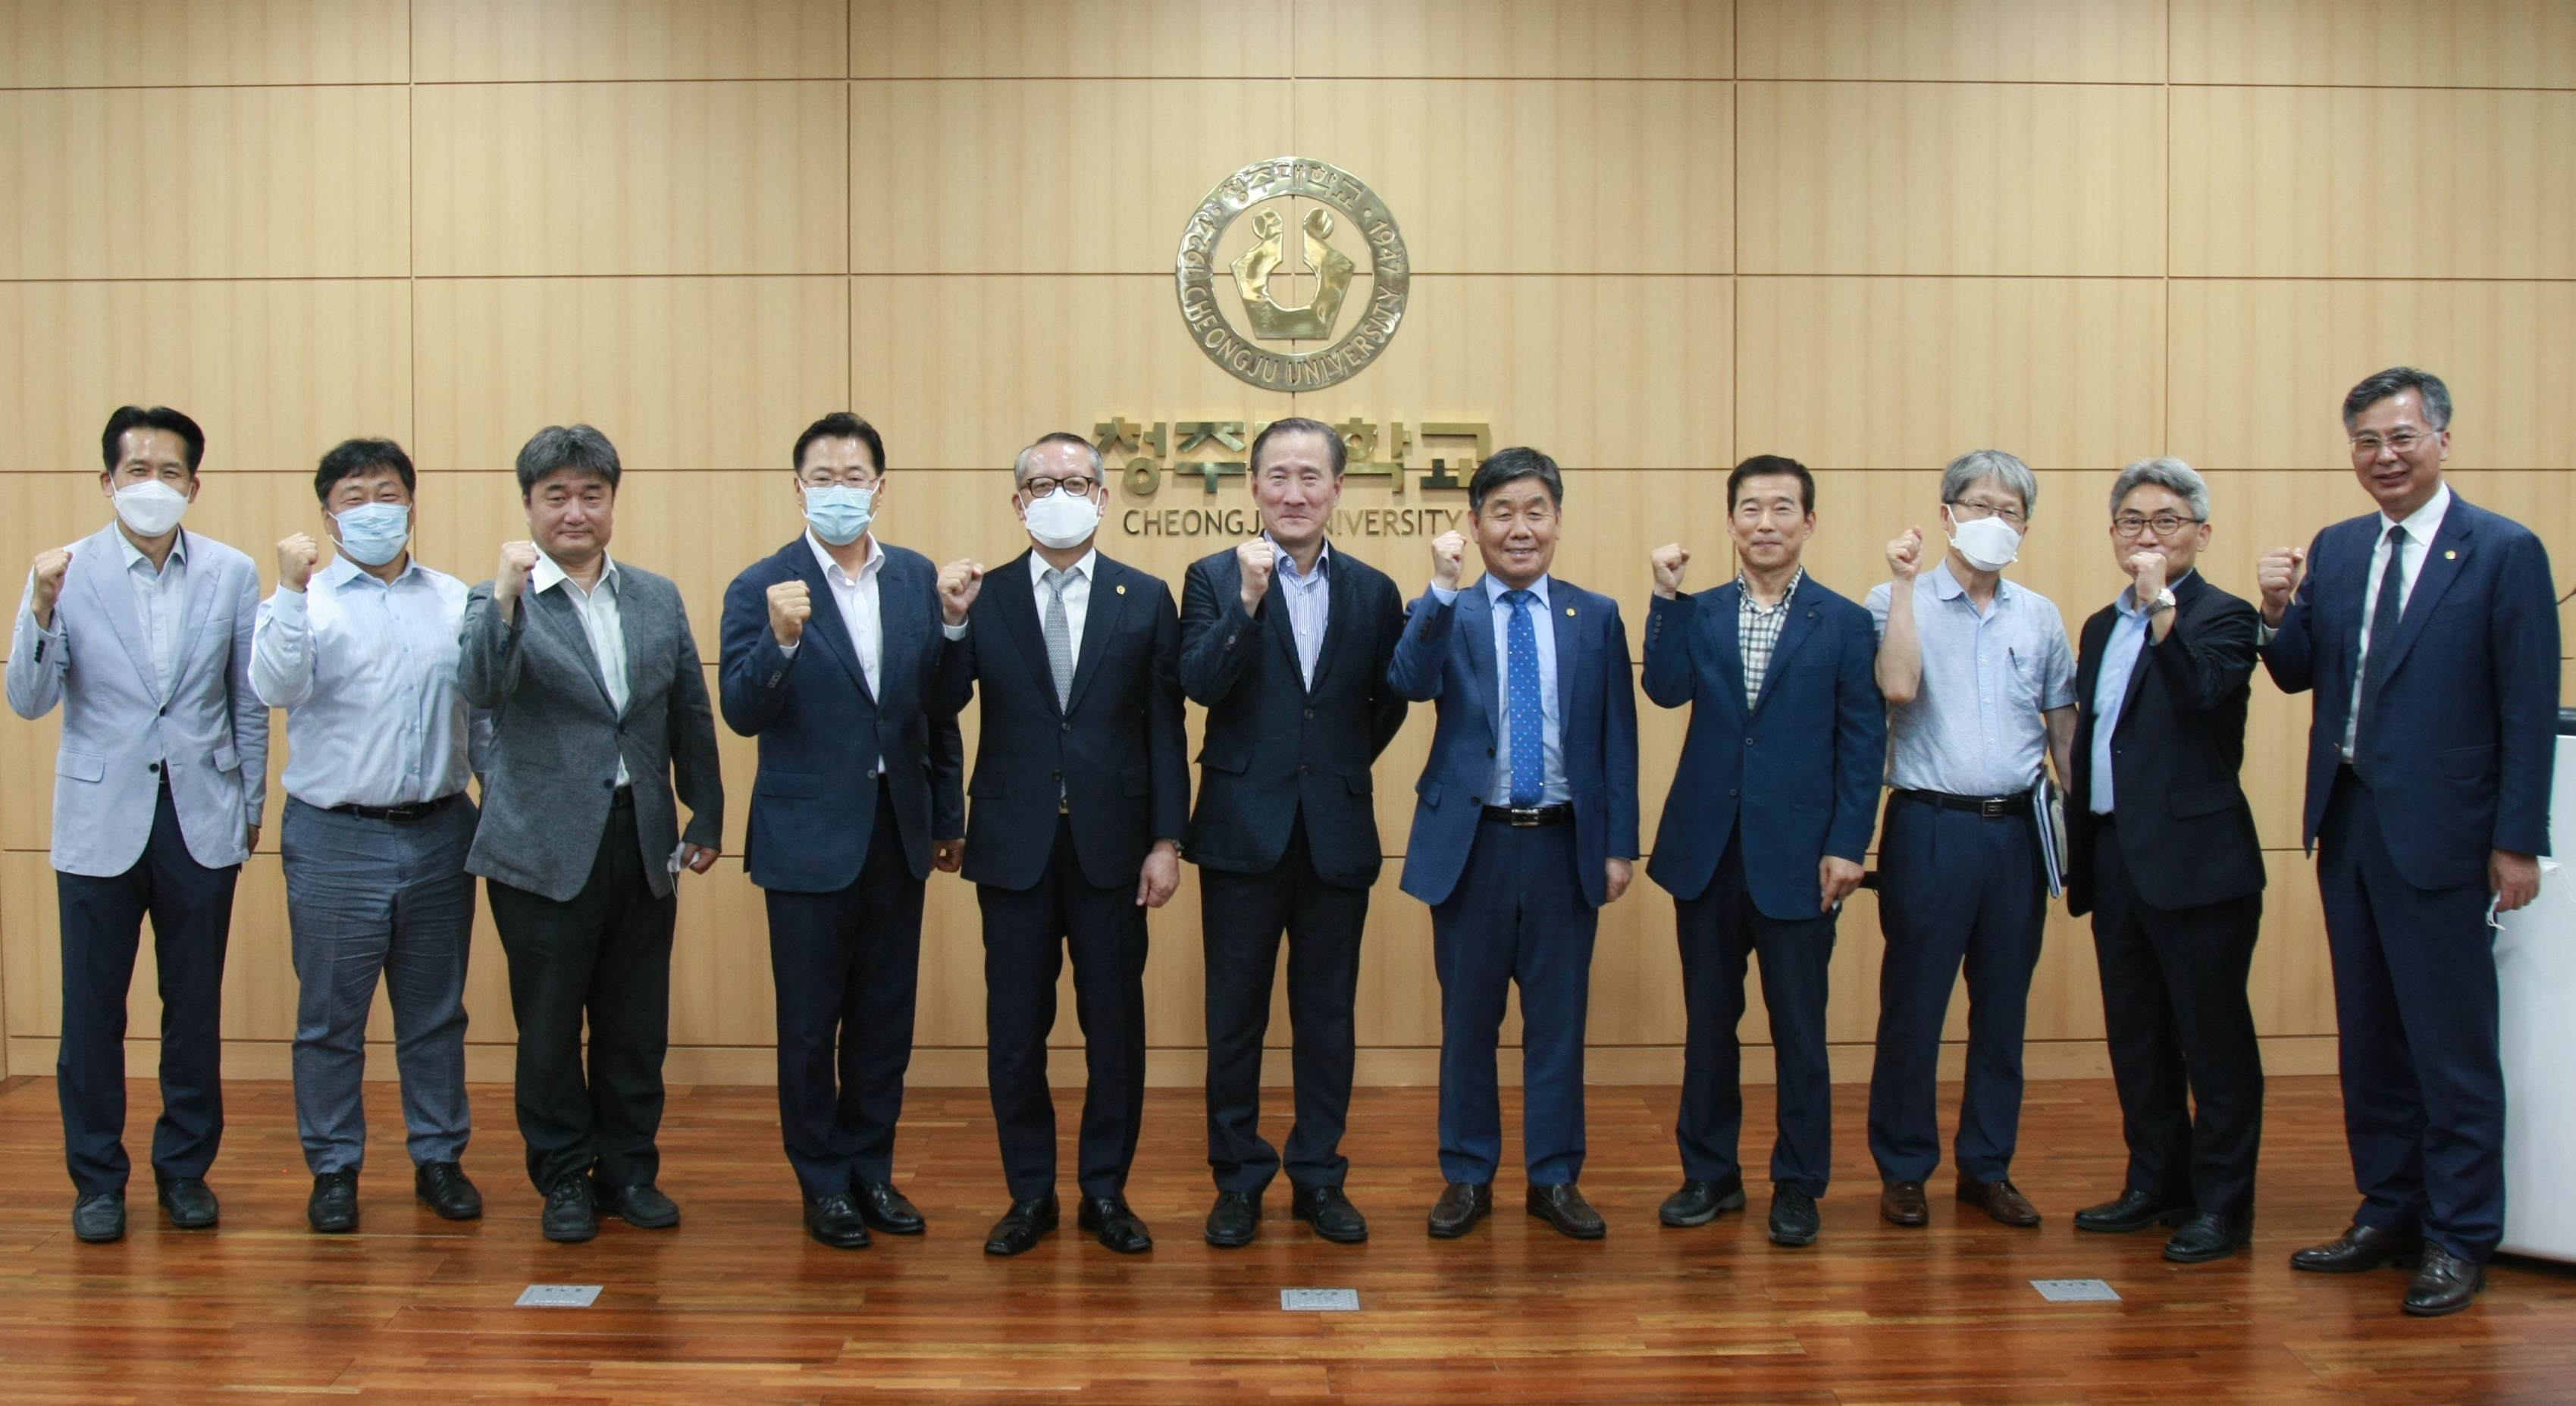 청주대는 15일 고려대학교 가속기과학과 김은산 교수를 초청, 방사광가속기 관련 인재 양성 등에 대한 특강을 진행했다.